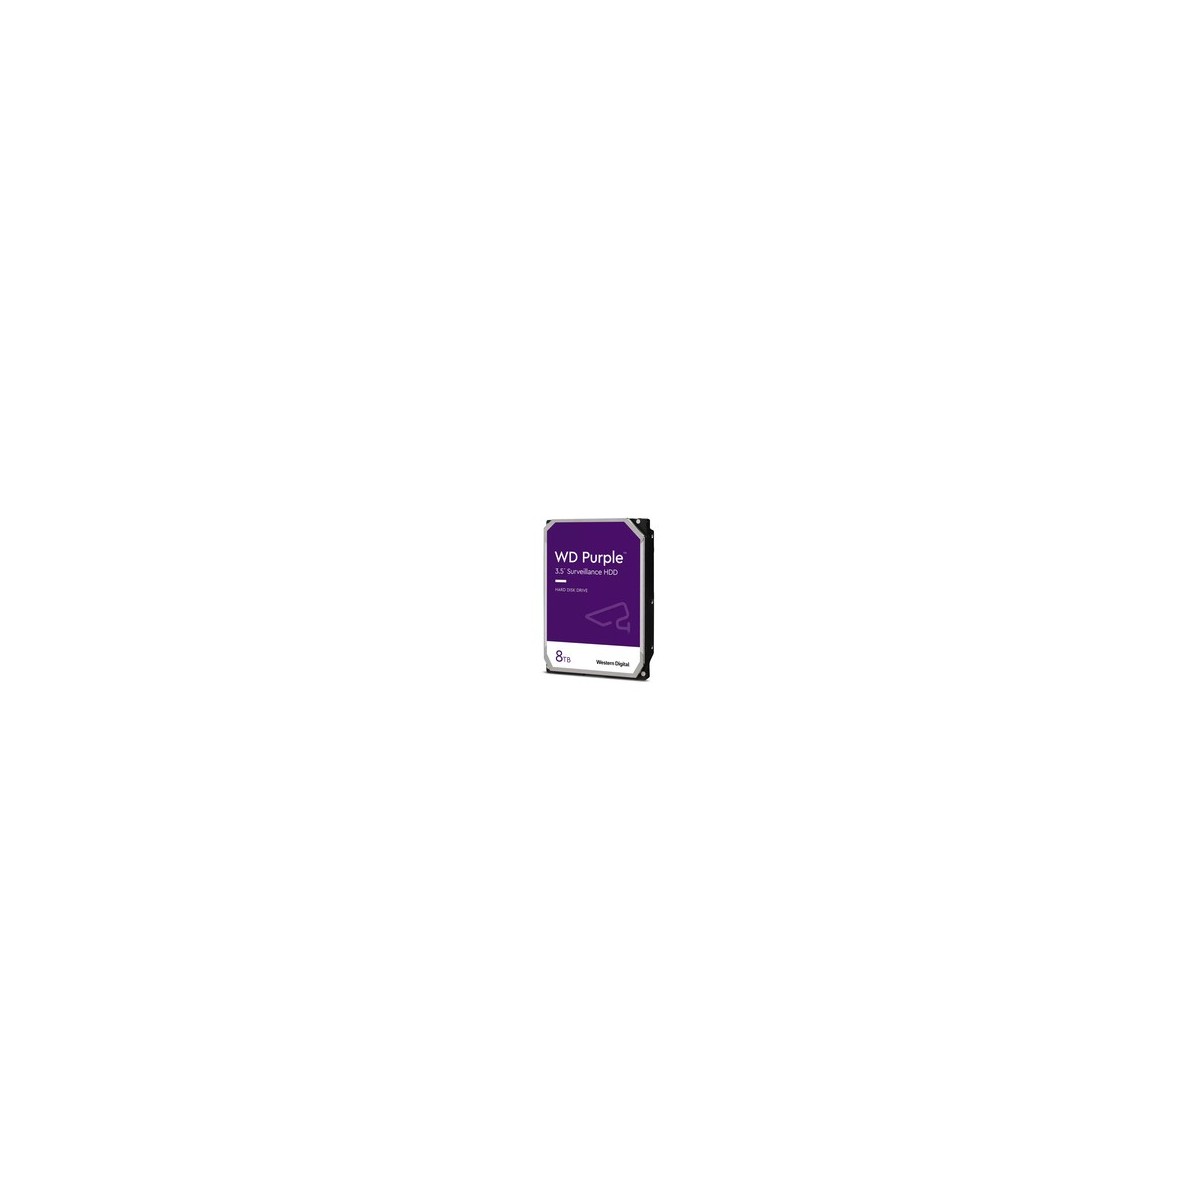 WD HDD Purple 8TB 3.5 SATA 6Gbs 256MB - Hdd - Serial ATA